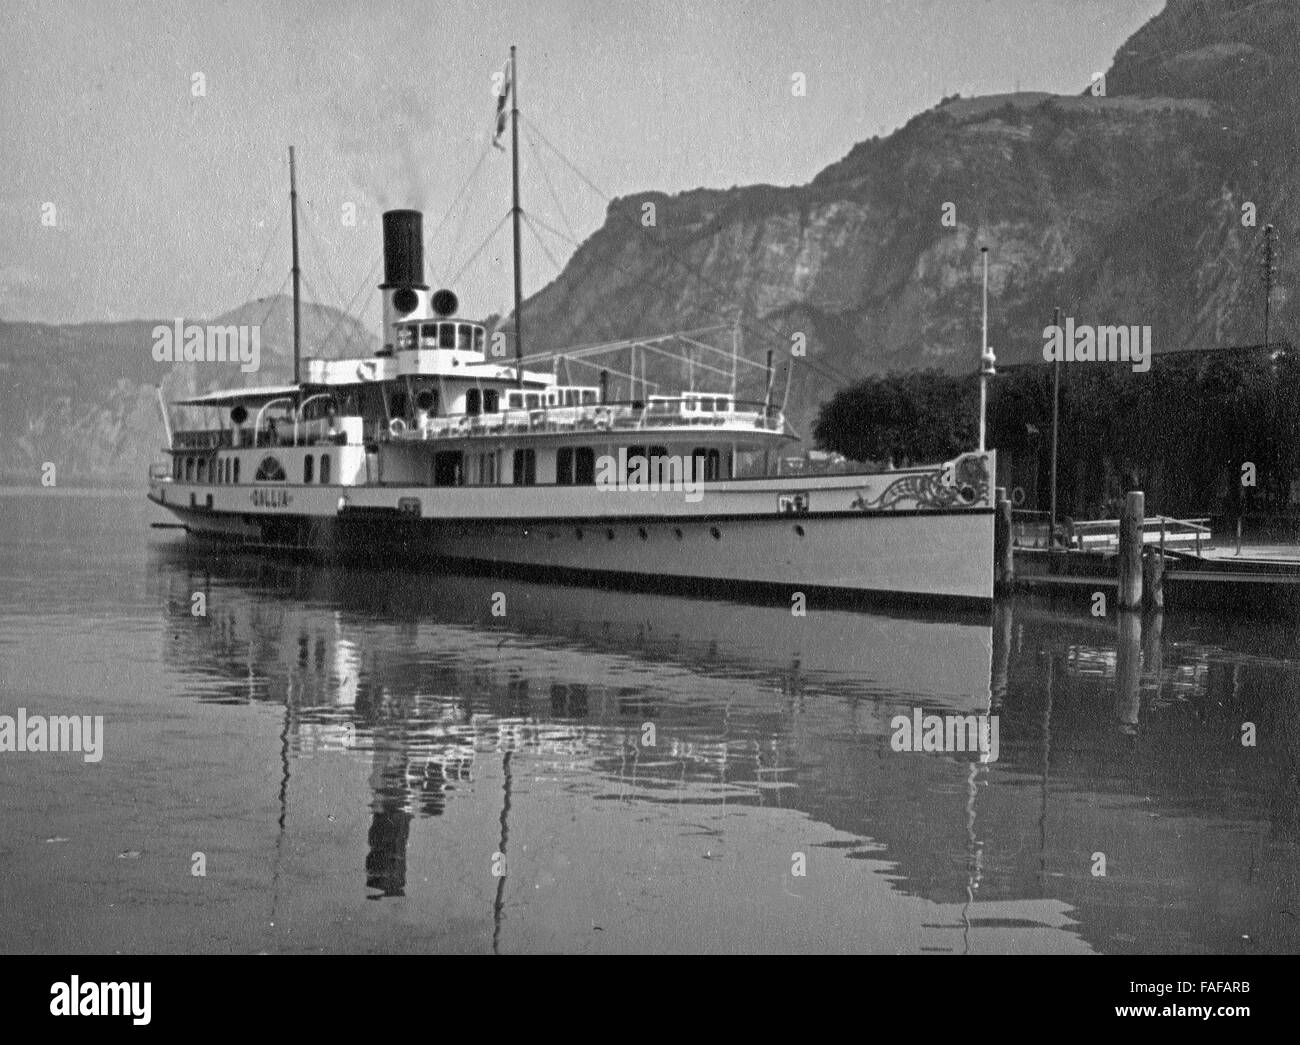 Dampfschiff auf dem Vierwaldstättersee, Schweiz 1930er Jahre. Pleasure steam boat on Lake Lucerne, Switzerland 1930s. Stock Photo